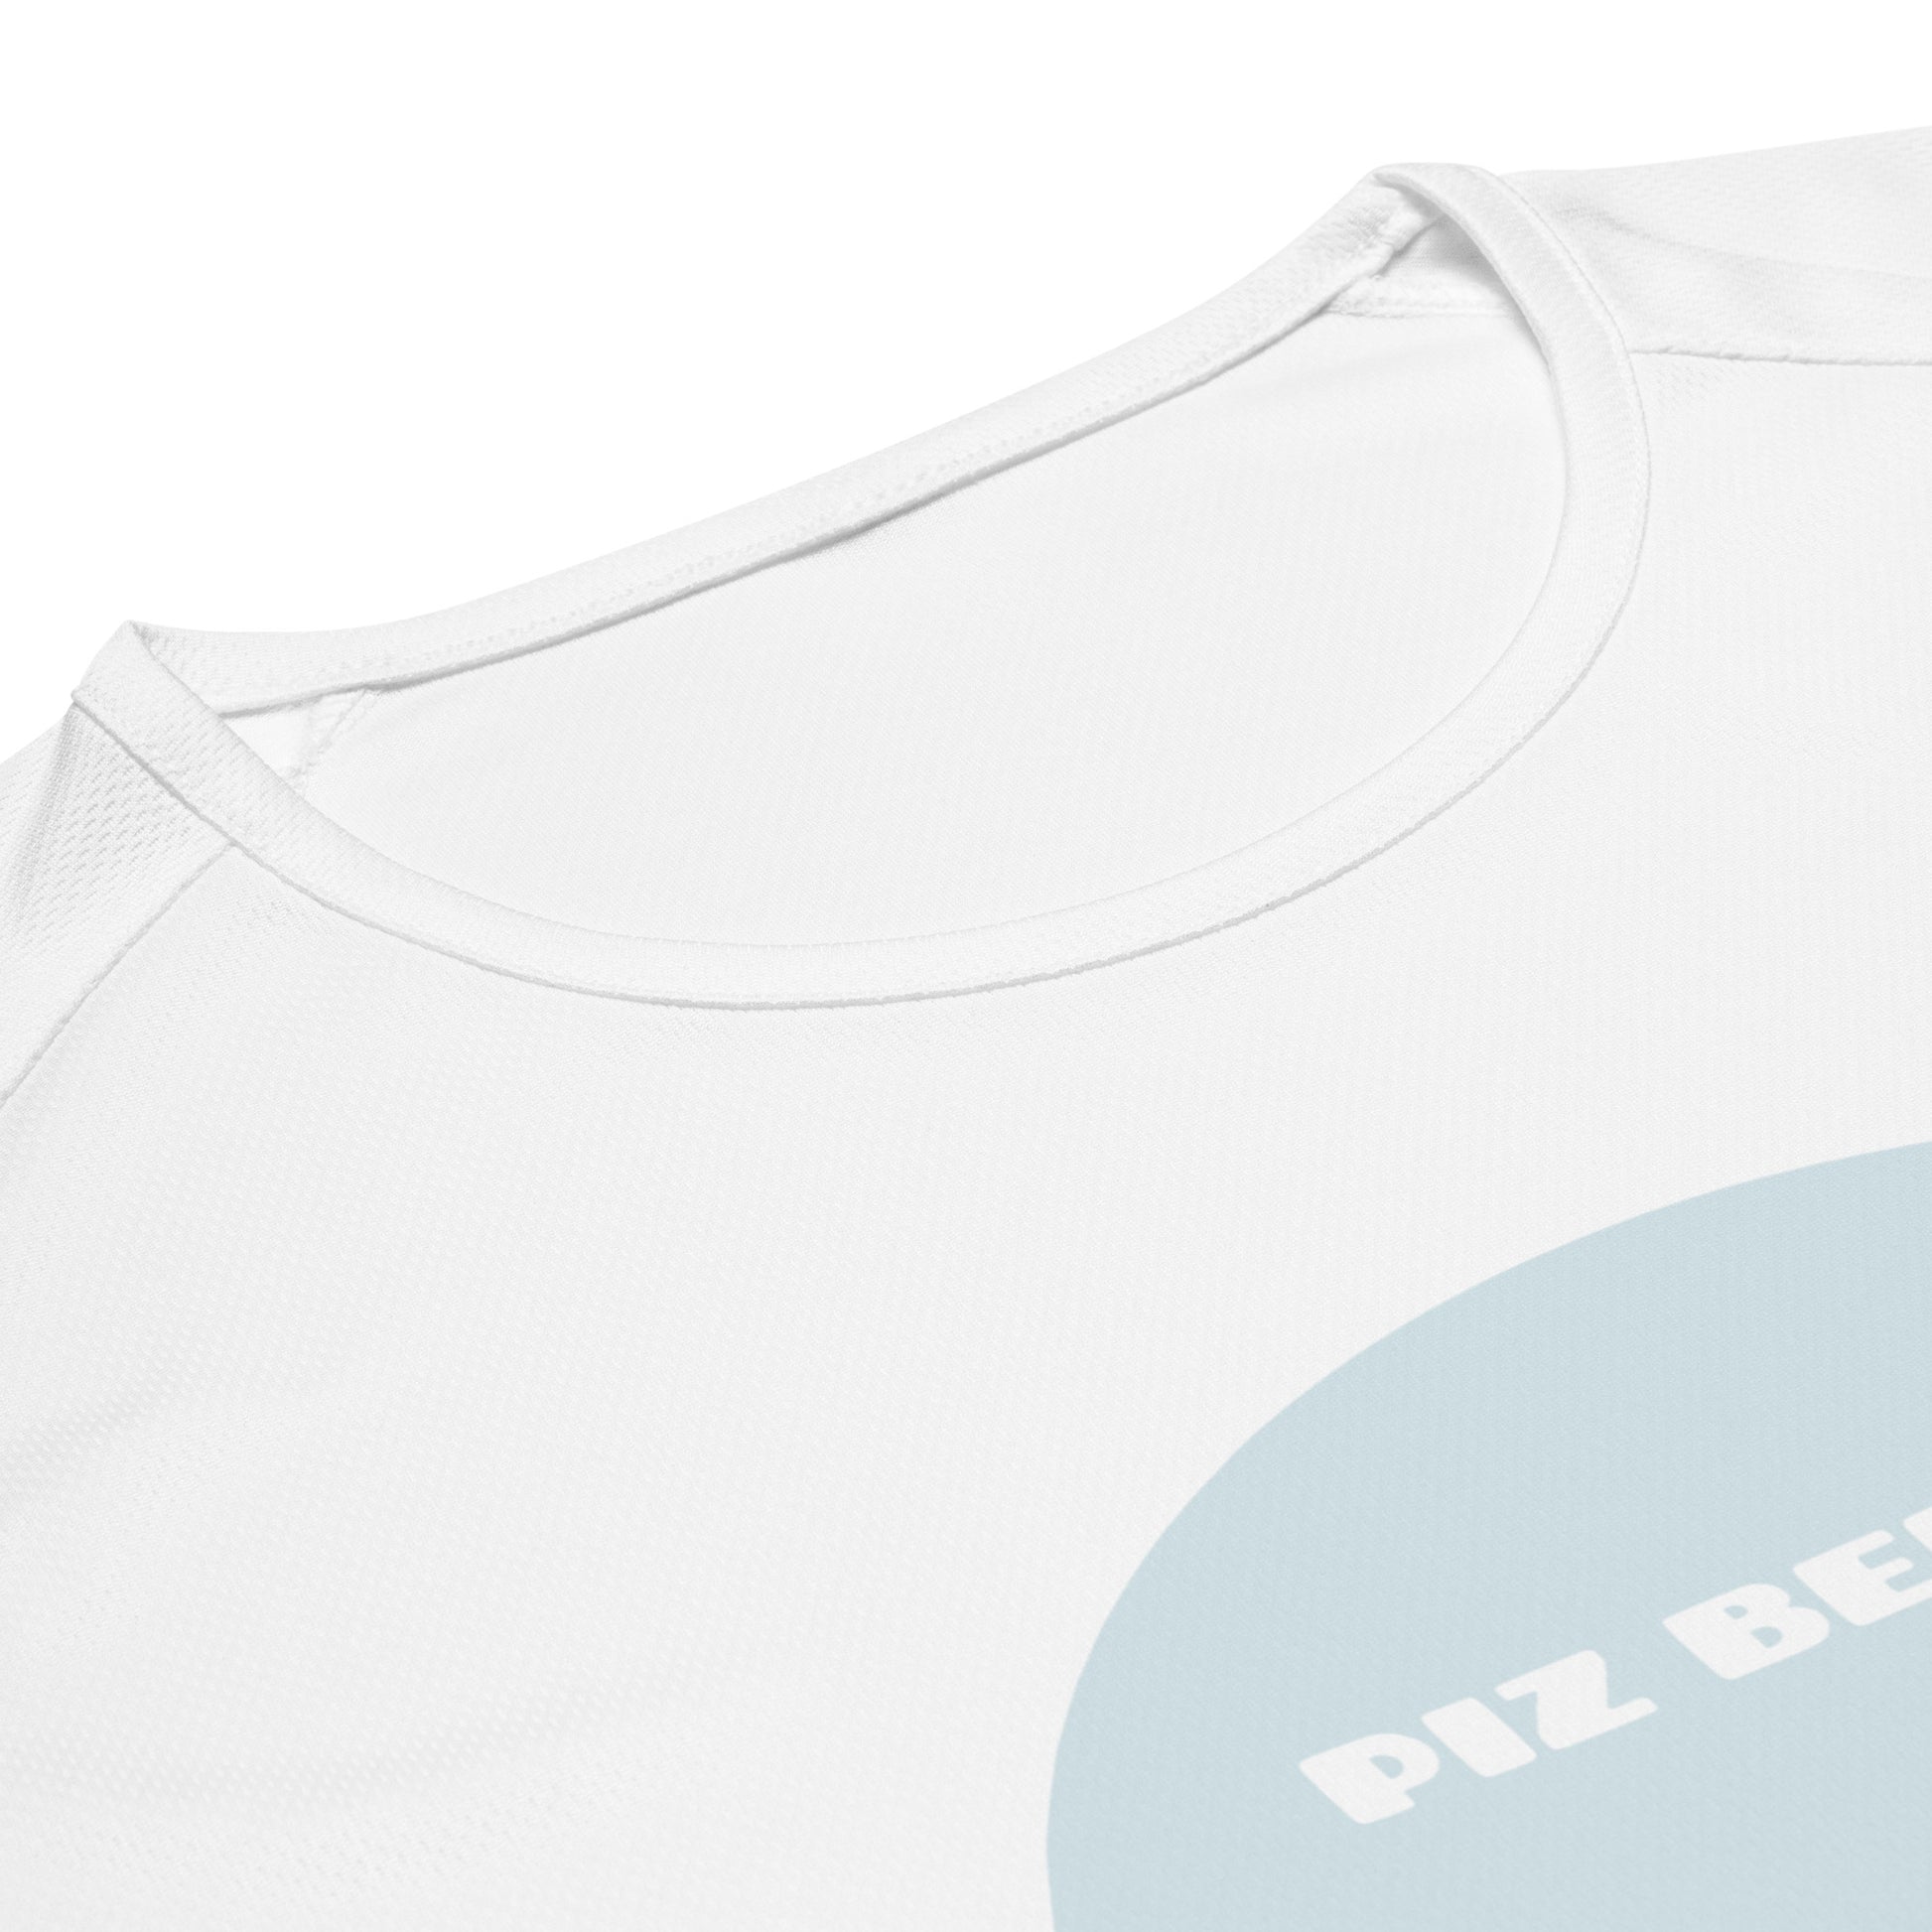 Kratenpartie eines weissen Sport-Shirts. Der Aufdruck des Piz Bernina ist teilweise sichtbar.